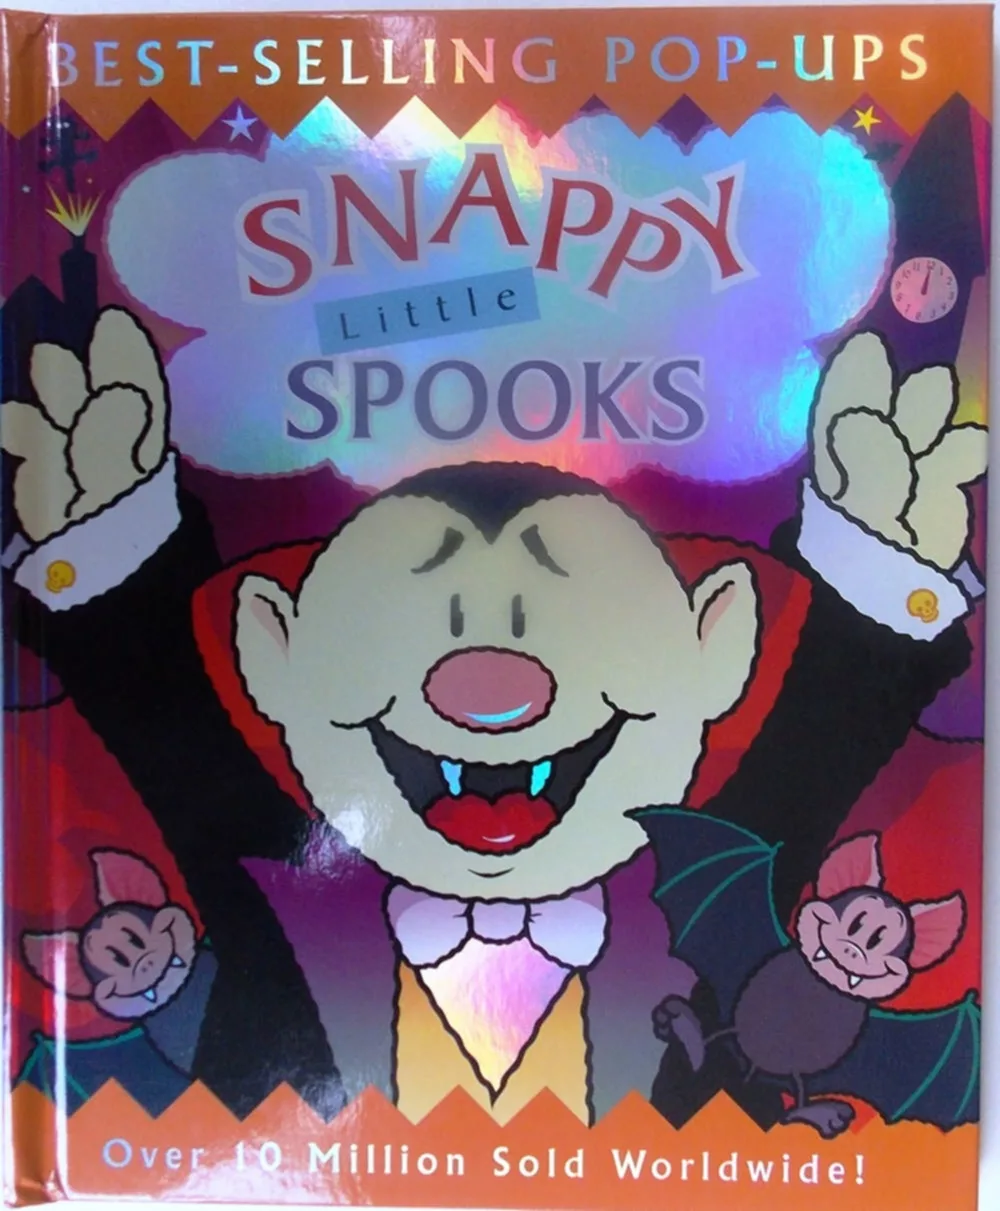 Snappy Little Spooks